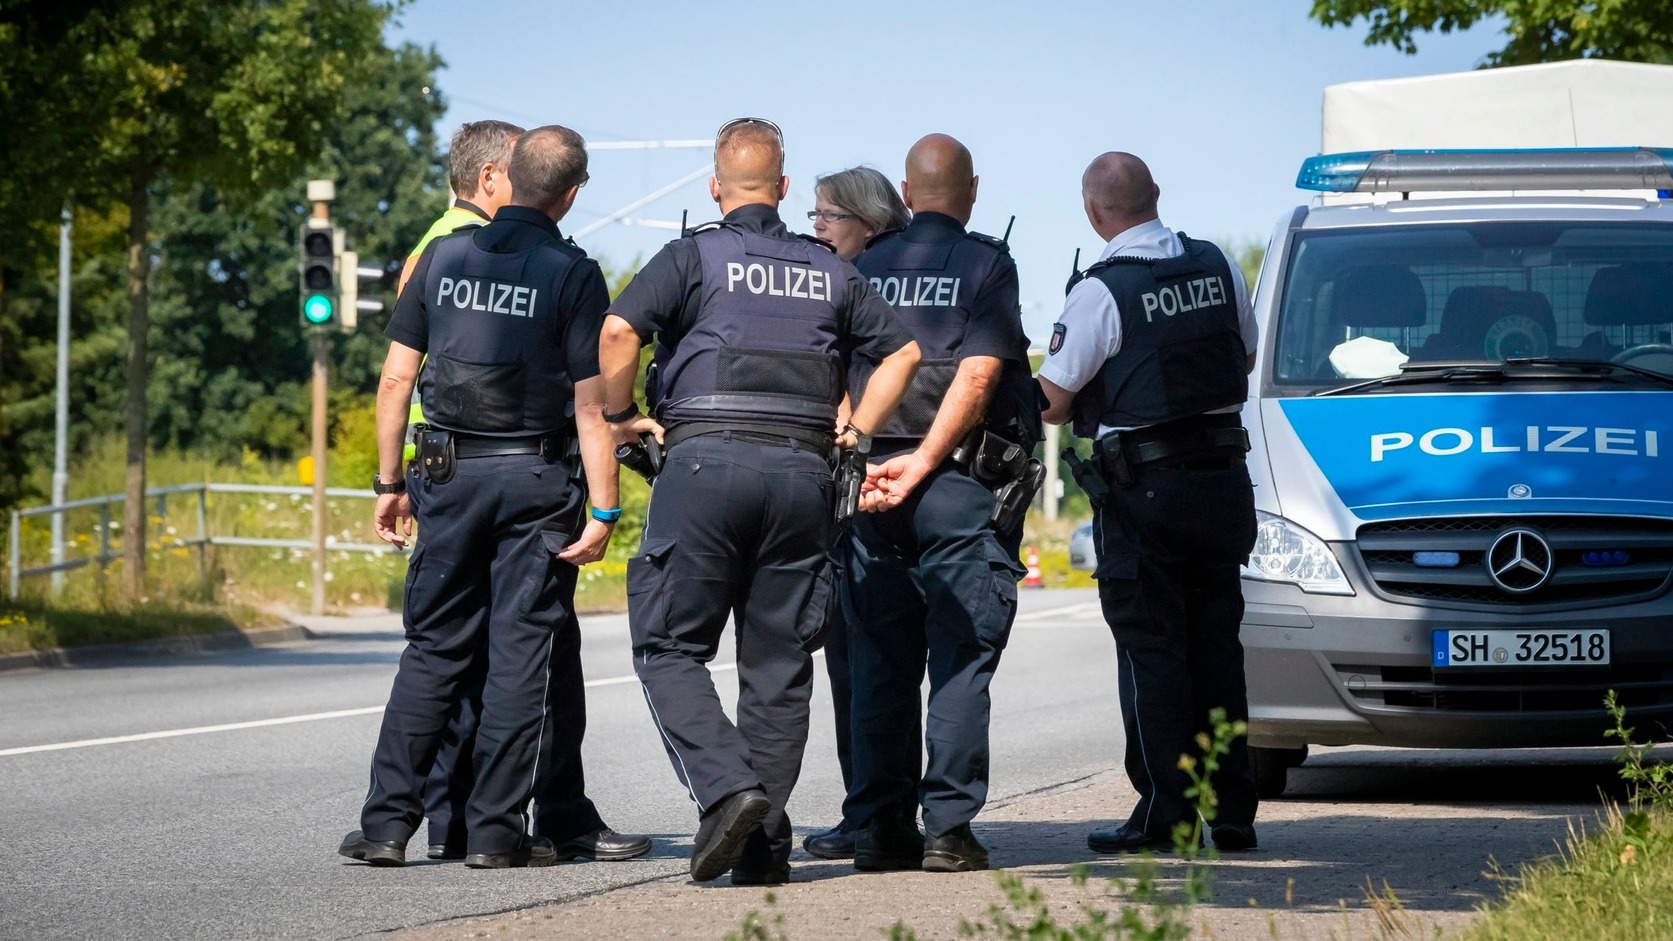 Német miniszter: Szélsőjobboldali terrorcselekmény volt a hallei zsinagóga elleni támadás